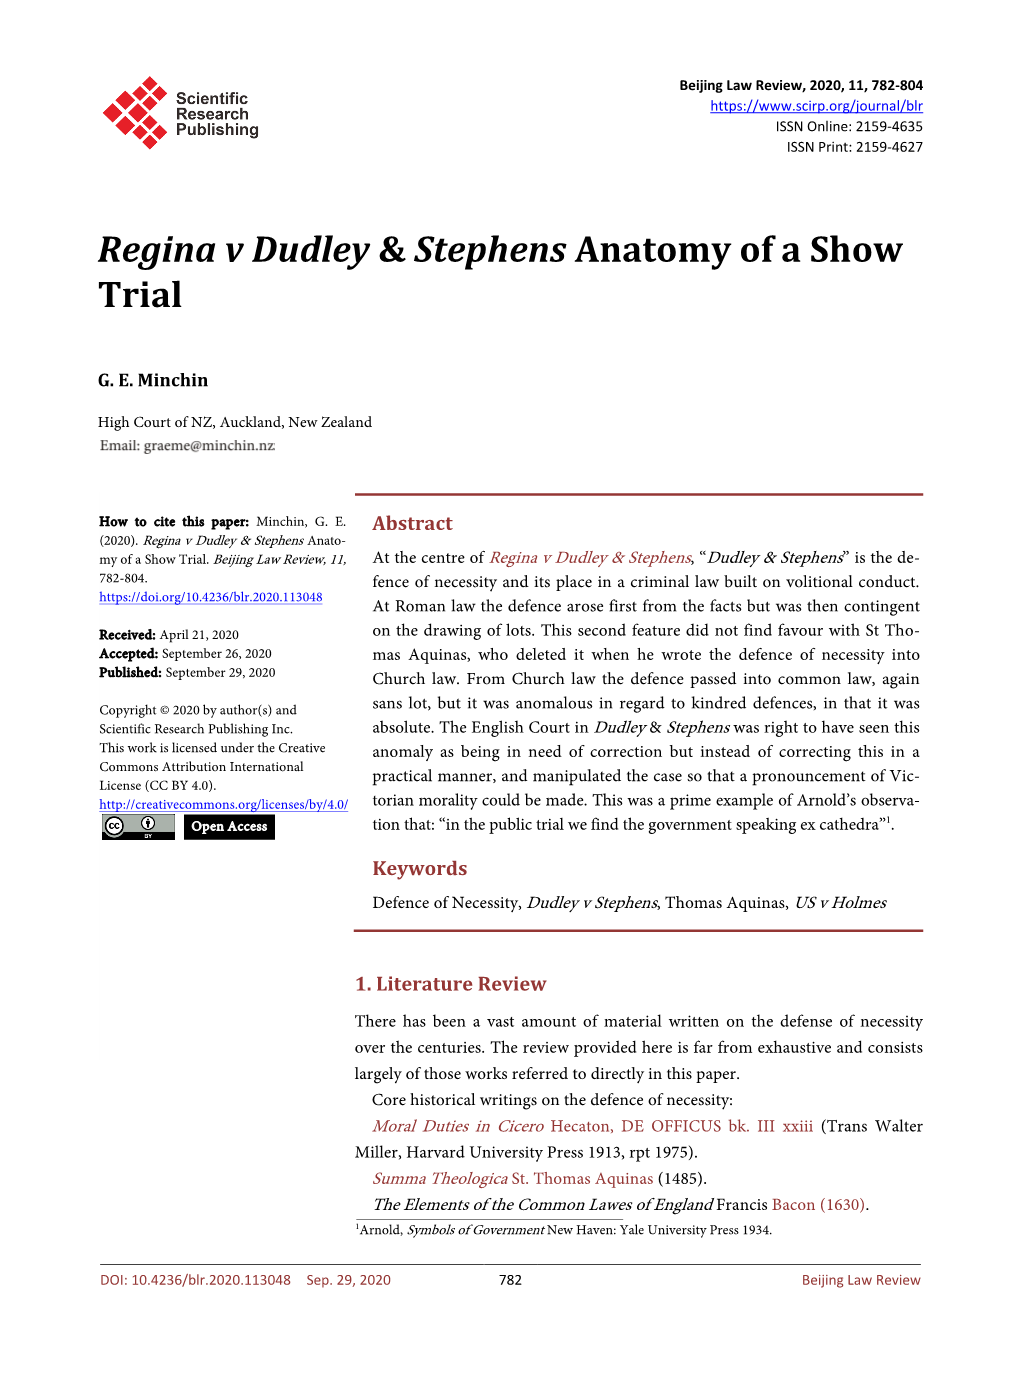 Regina V Dudley & Stephens Anatomy of a Show Trial